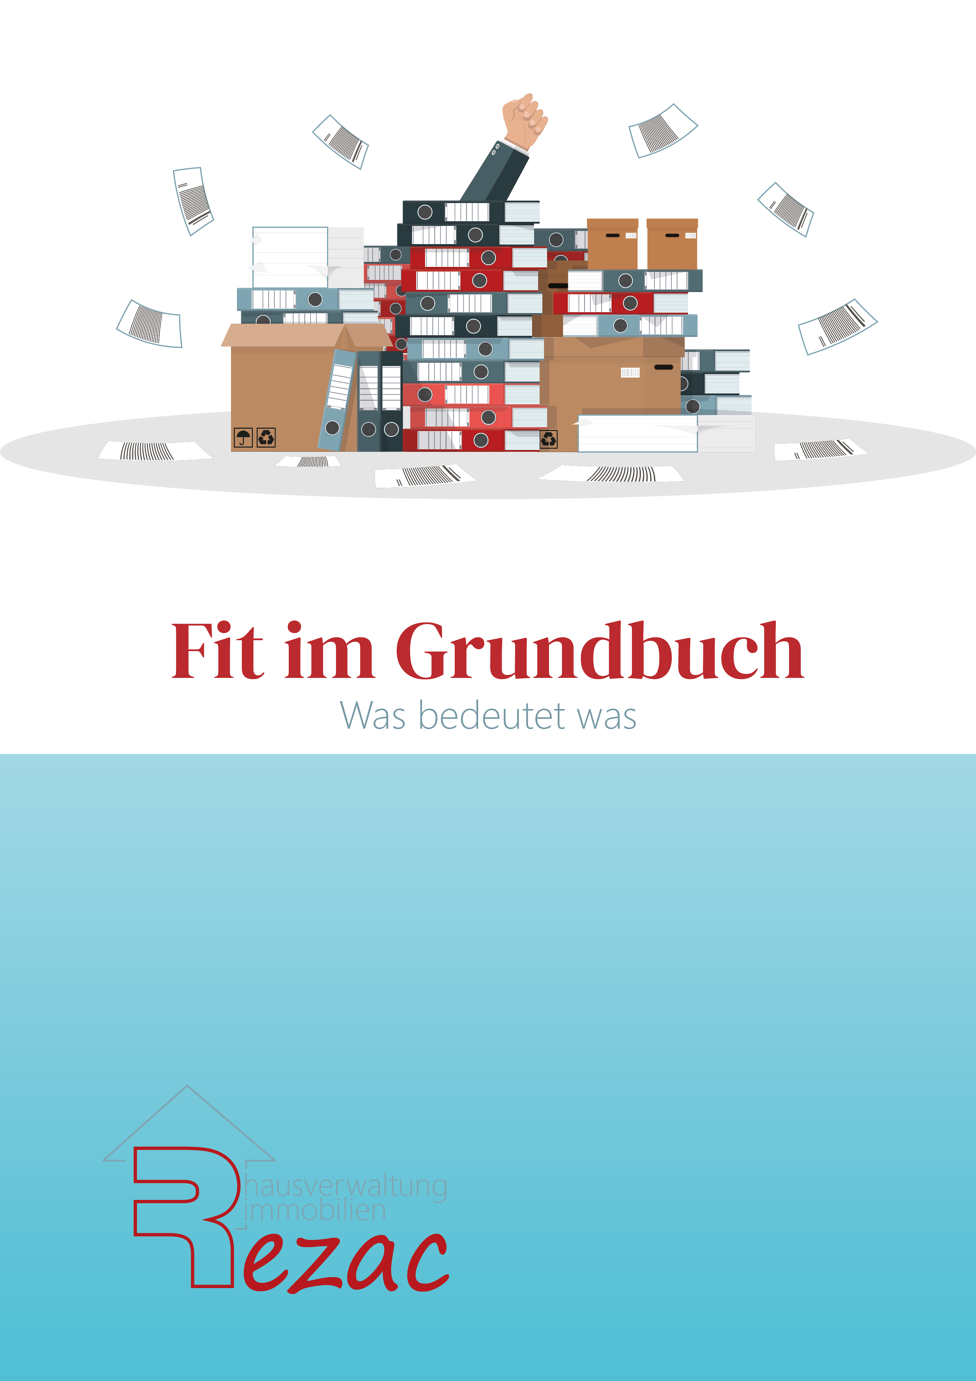 Coverbild des E-Books 'Fit im Grundbuch - Was bedeutet was' von Rezac